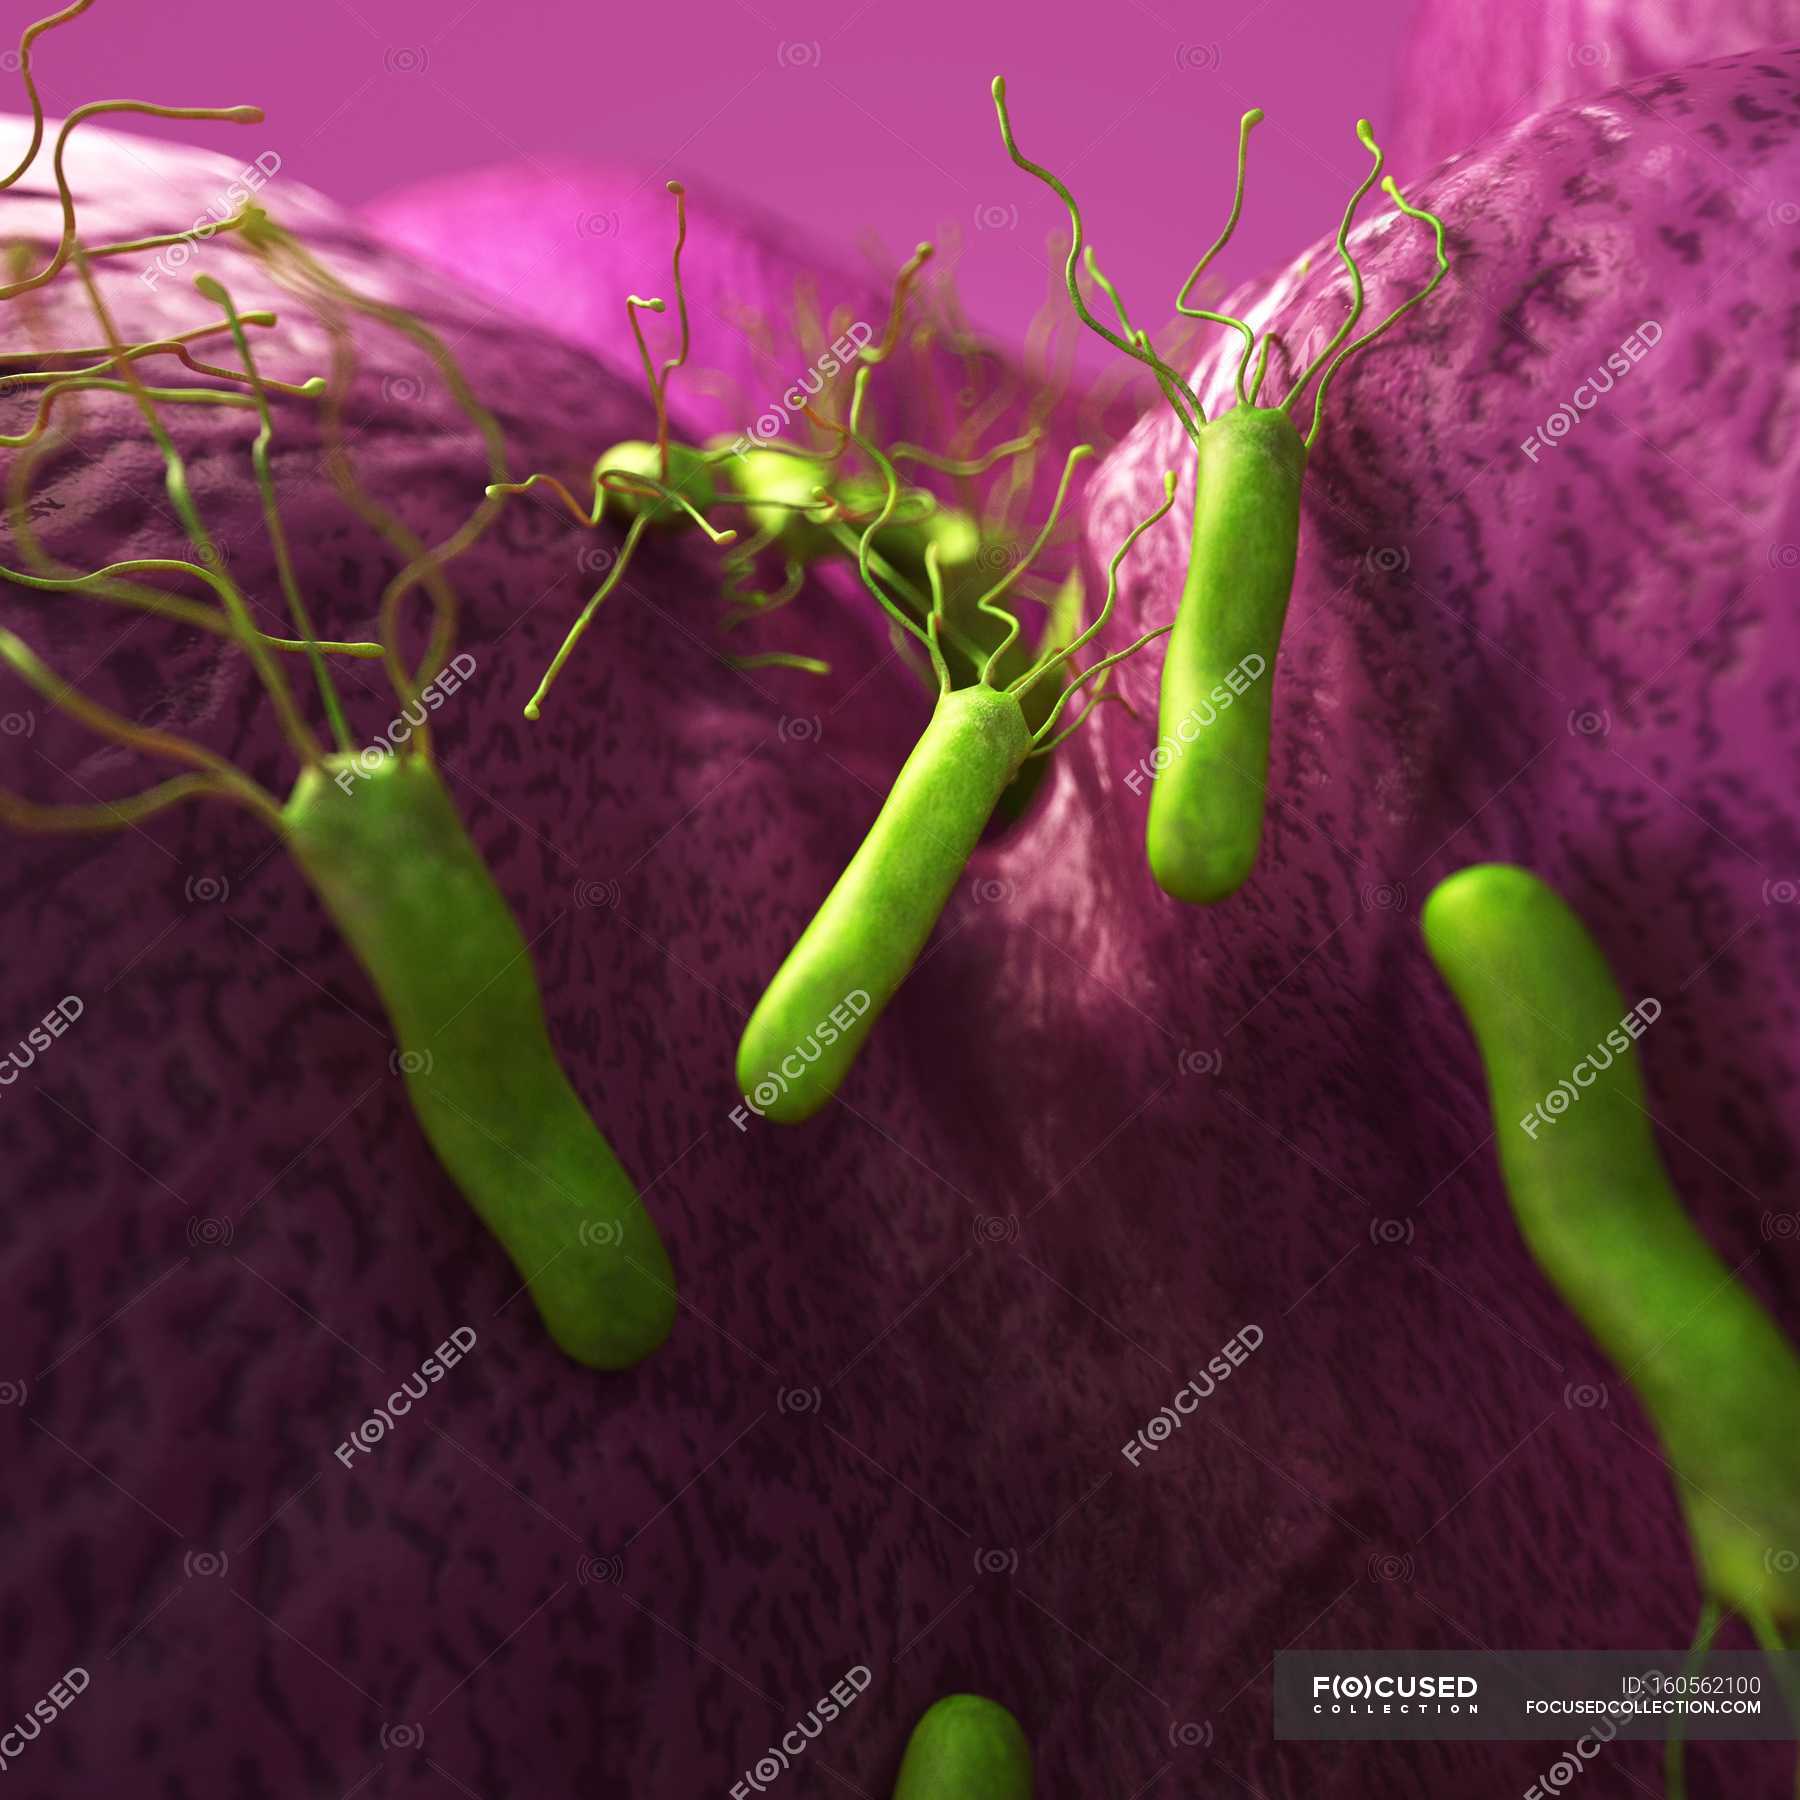 Бактерия вызывающая язву. Микроб хеликобактер пилори. Helicobacter pylori изображение бактерии. Хелико бактерия микроб.